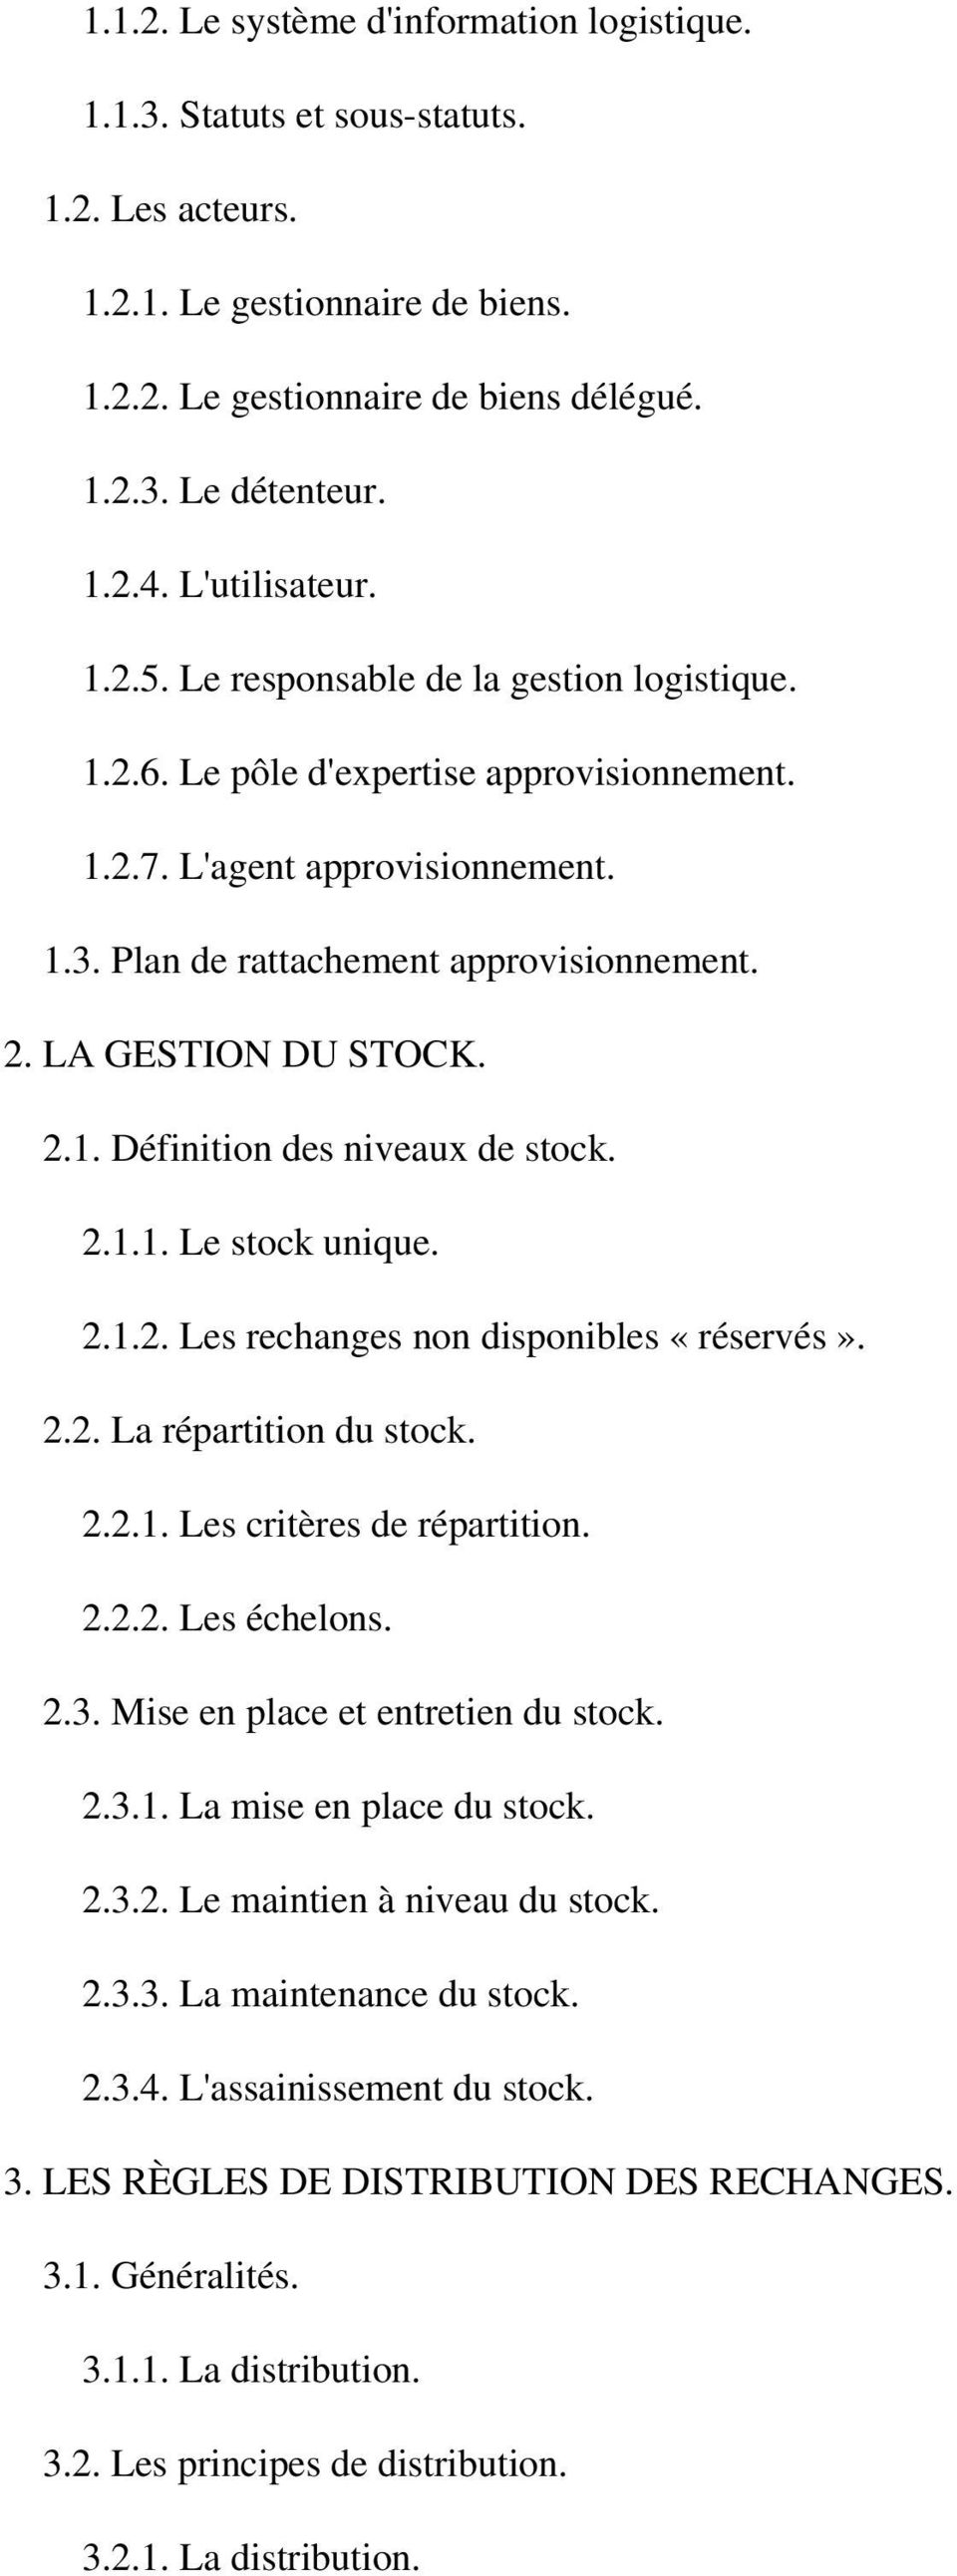 LA GESTION DU STOCK. 2.1. Définition des niveaux de stock. 2.1.1. Le stock unique. 2.1.2. Les rechanges non disponibles «réservés». 2.2. La répartition du stock. 2.2.1. Les critères de répartition. 2.2.2. Les échelons.